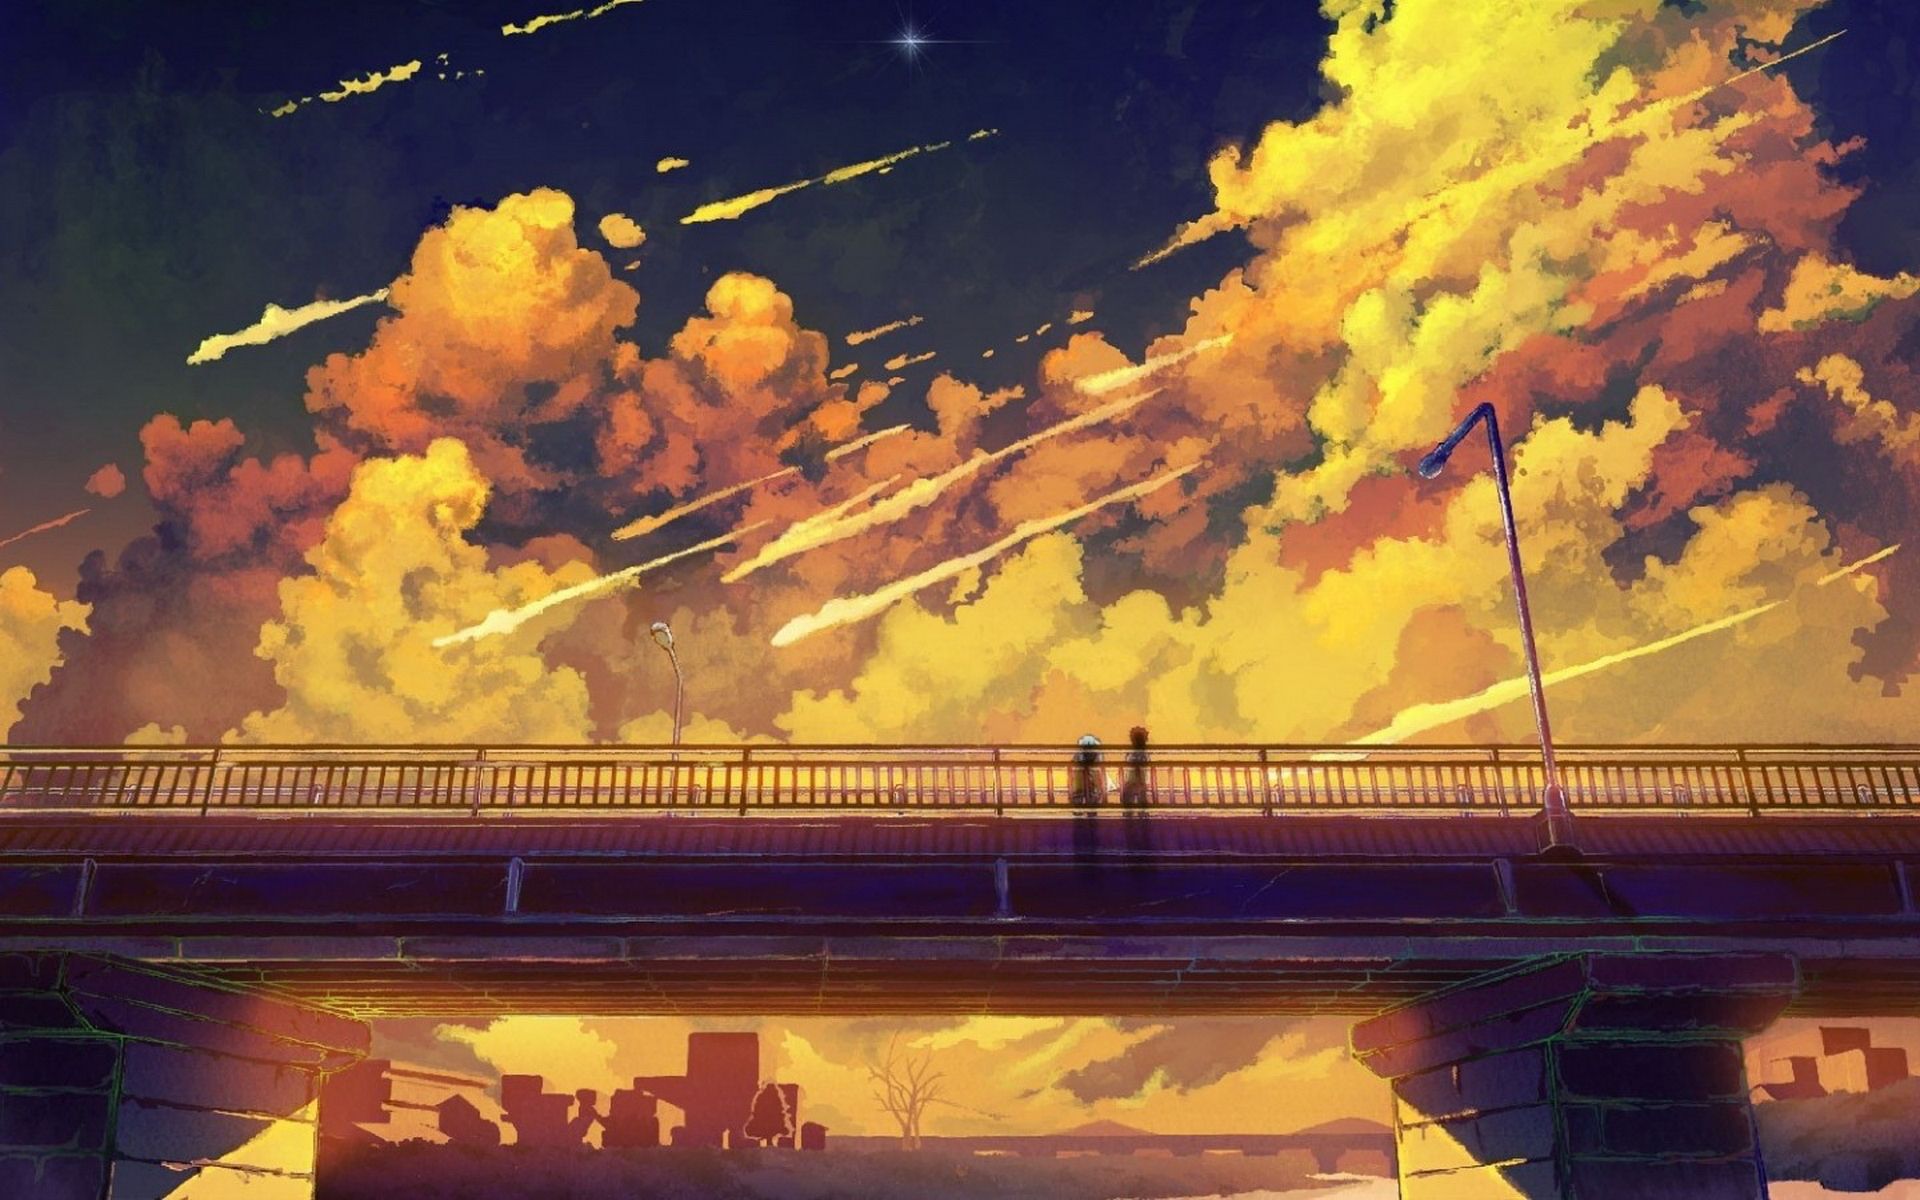 Amazing Anime Backgrounds